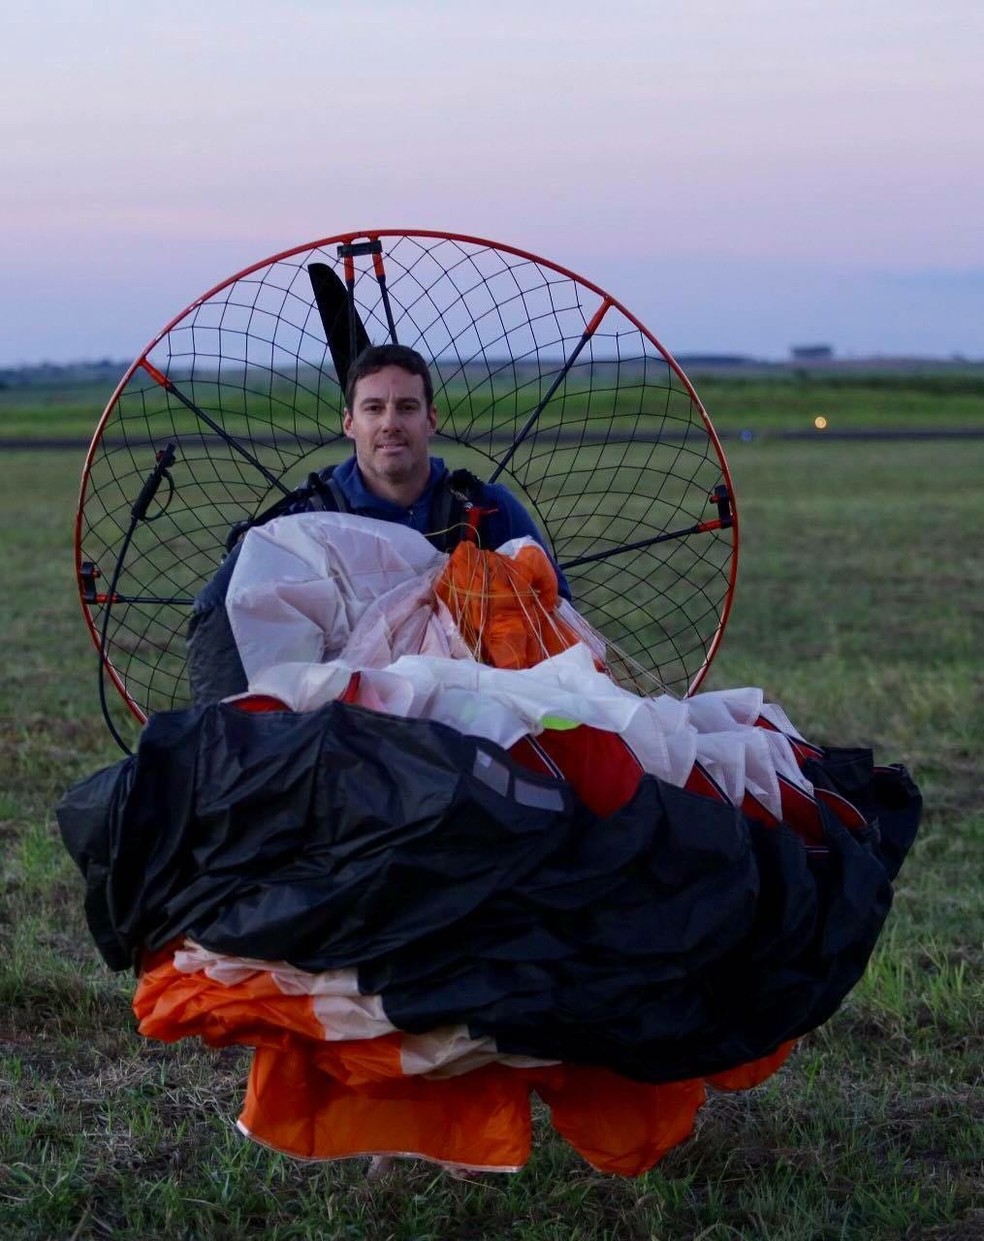 Empresário de 45 anos morreu em queda de paraglider em Lins (Foto: J. Serafim Show / Divulgação )